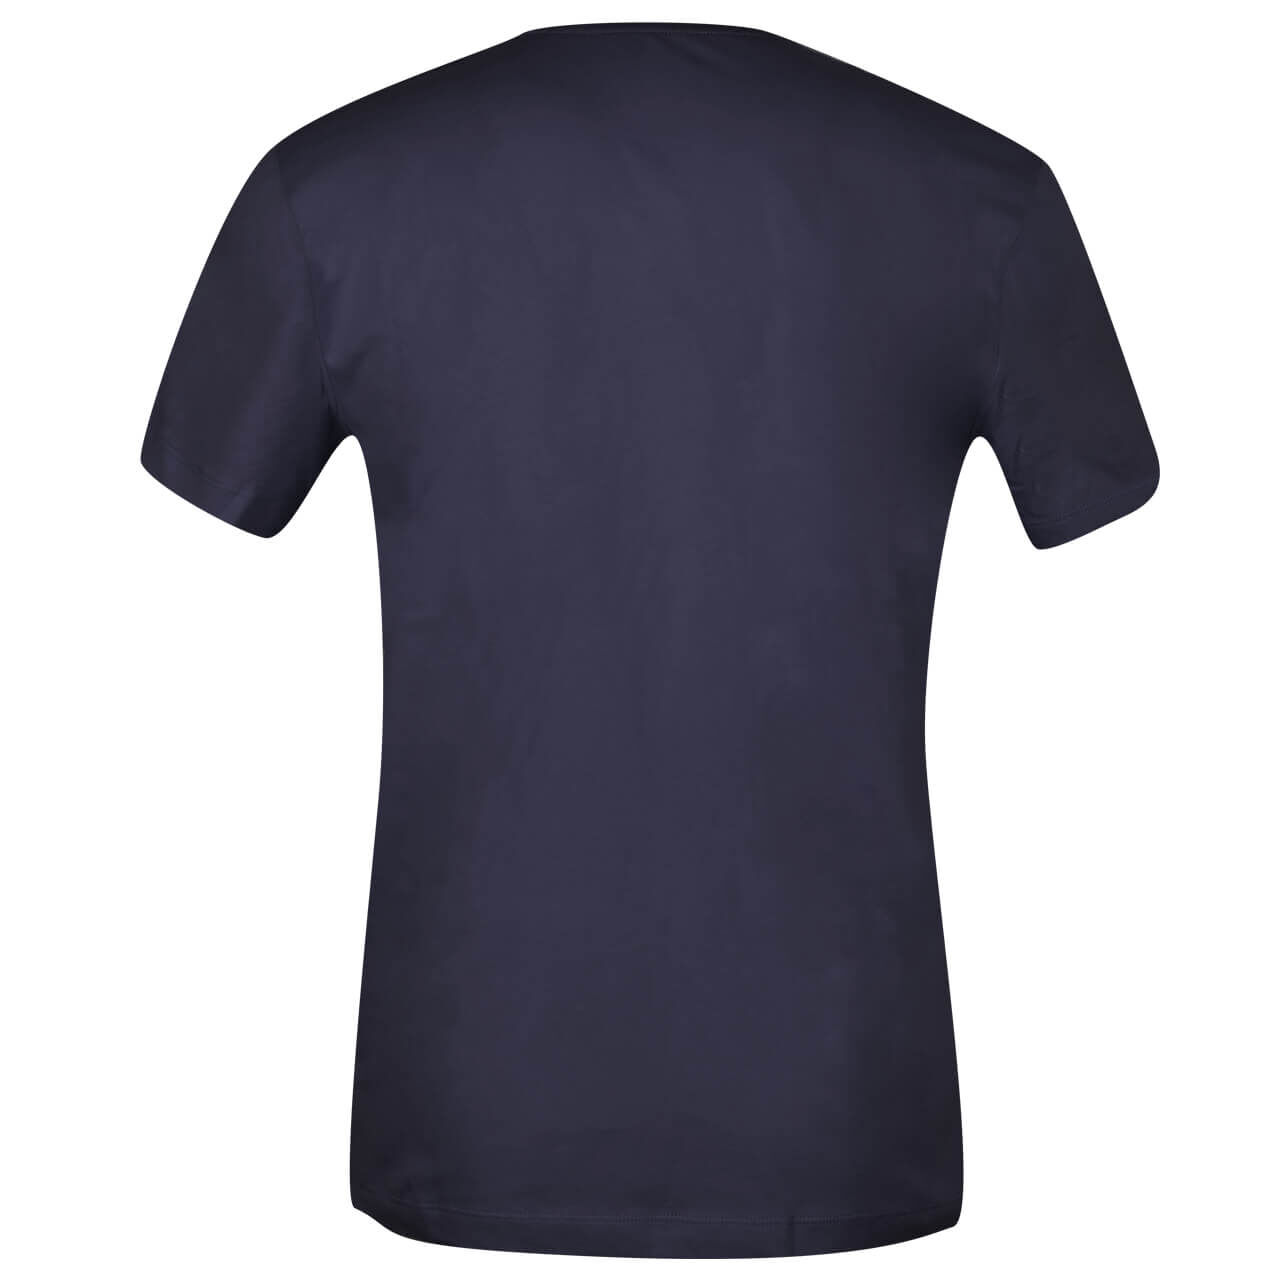 Tom Tailor T-Shirt für Herren in Dunkelblau mit Print, FarbNr.: 10668